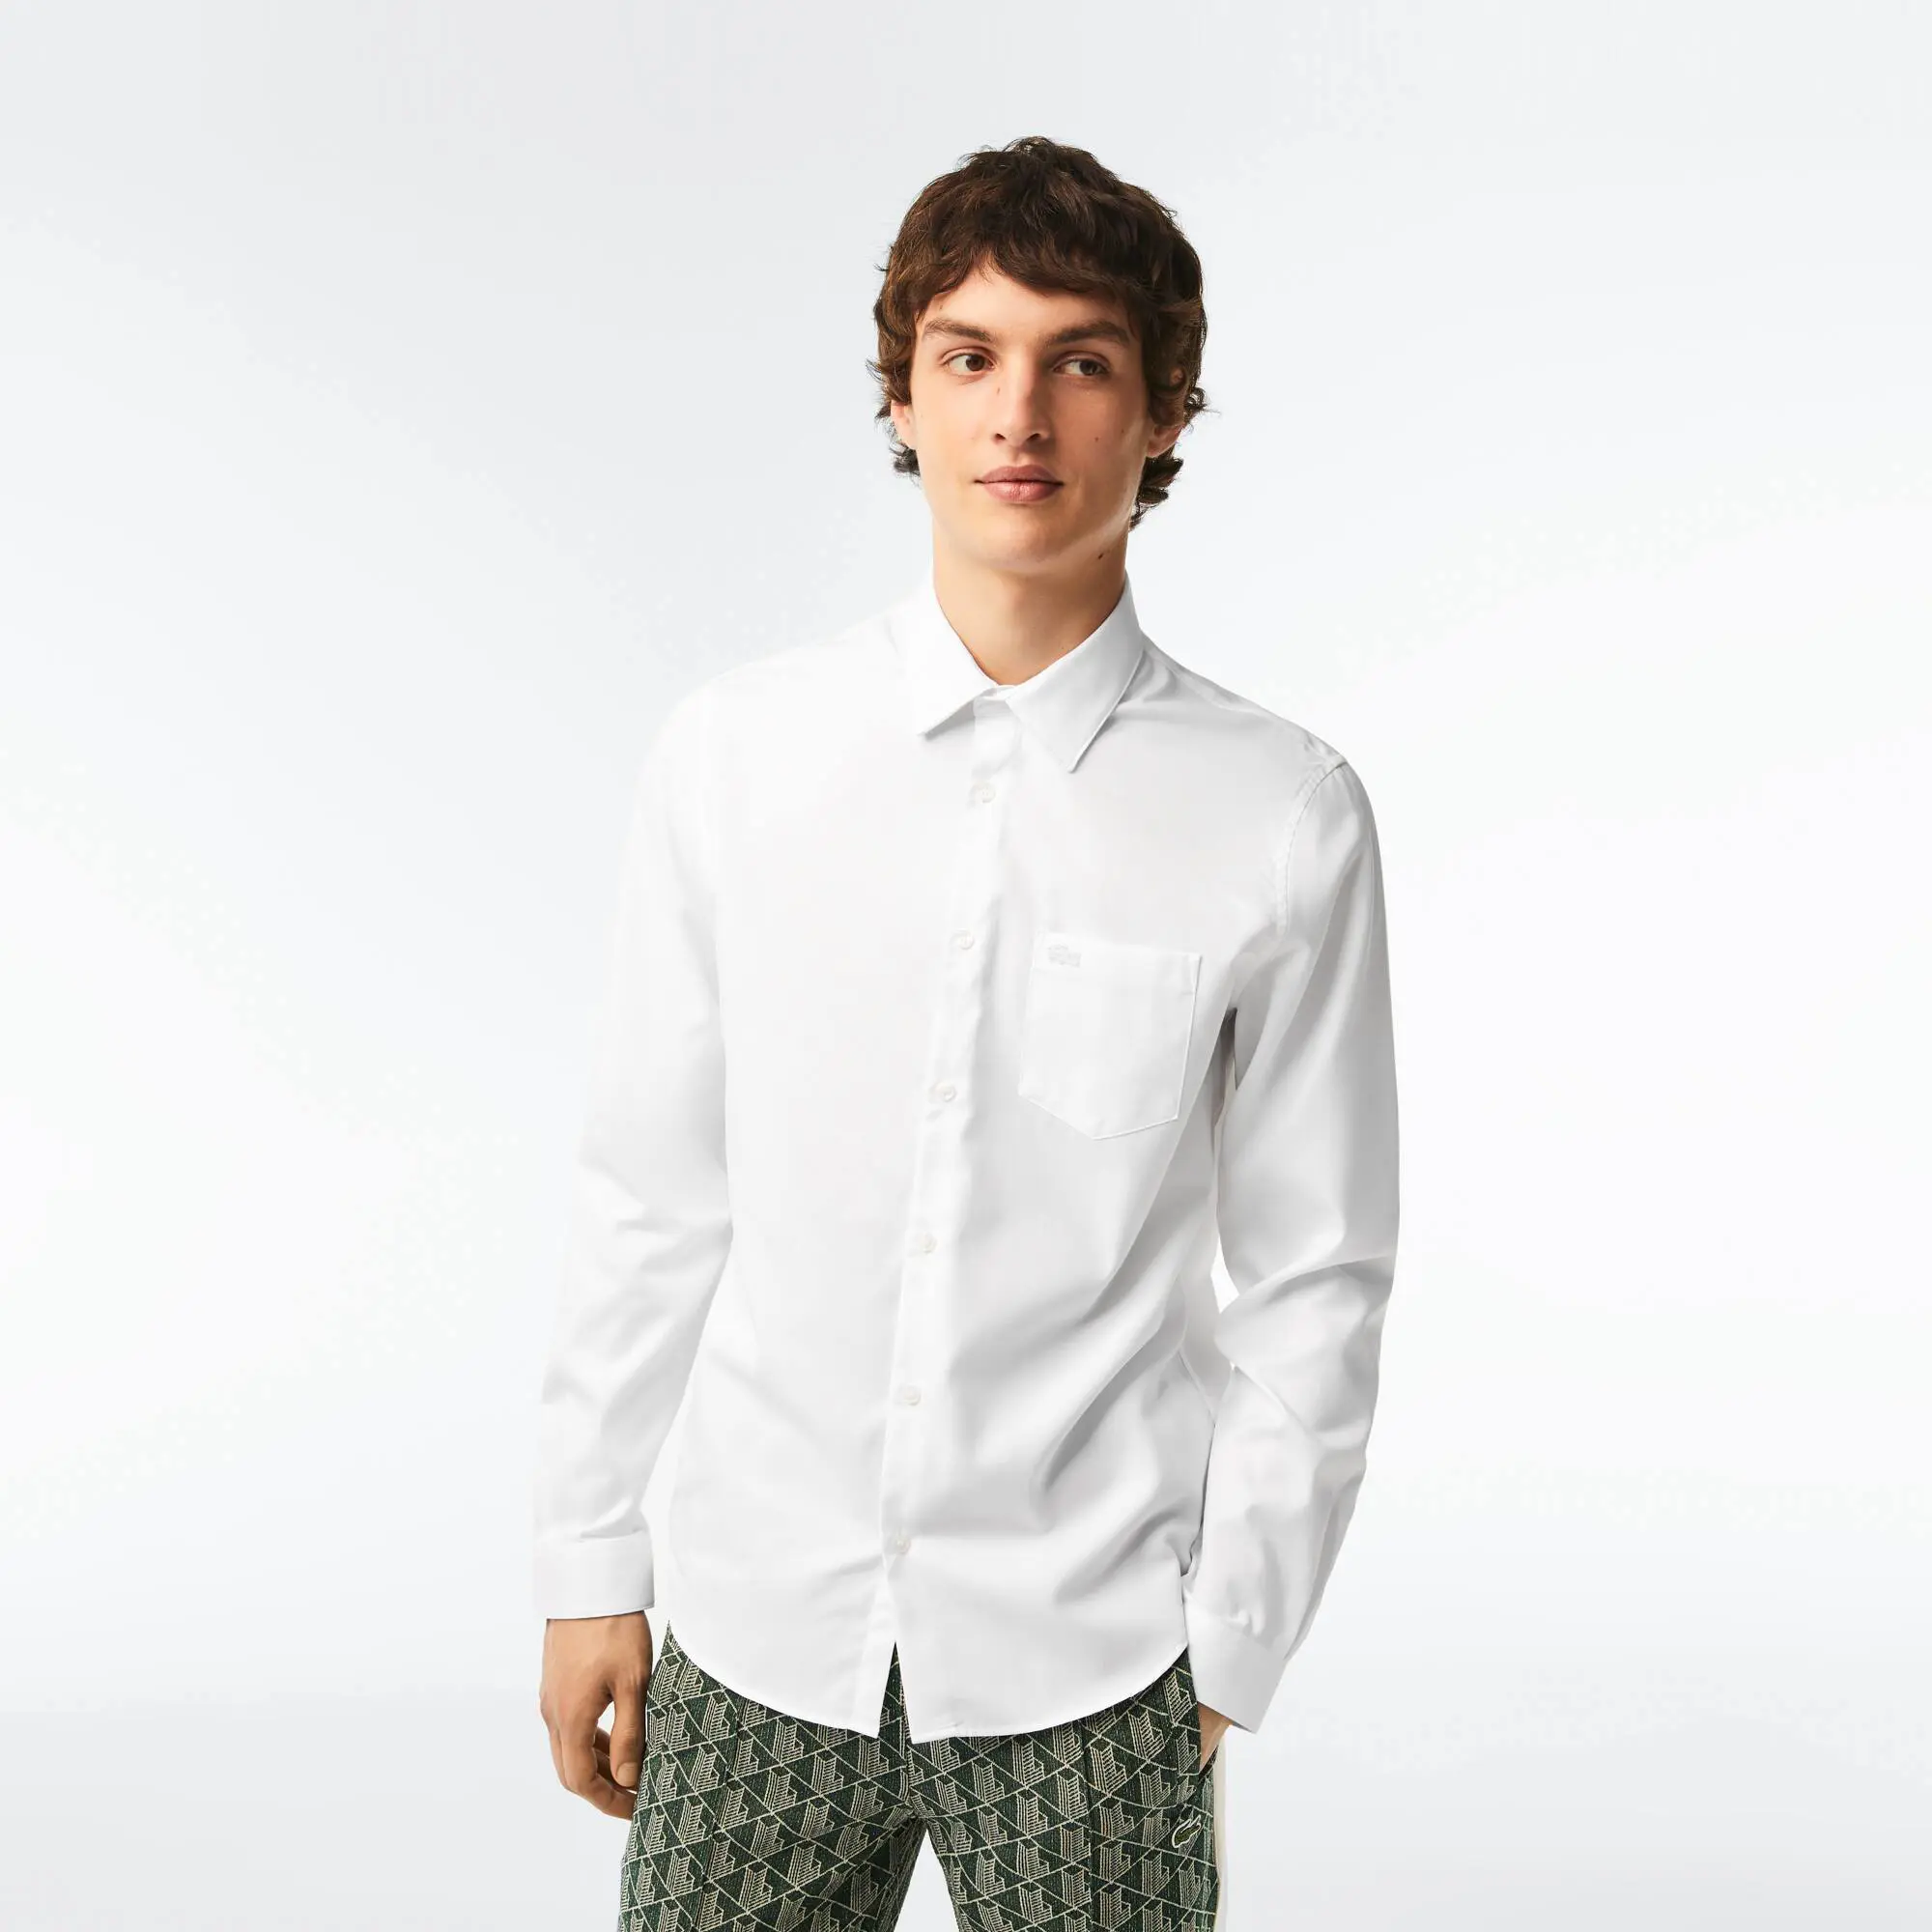 Lacoste Men's Regular Fit Solid Cotton Shirt. 1